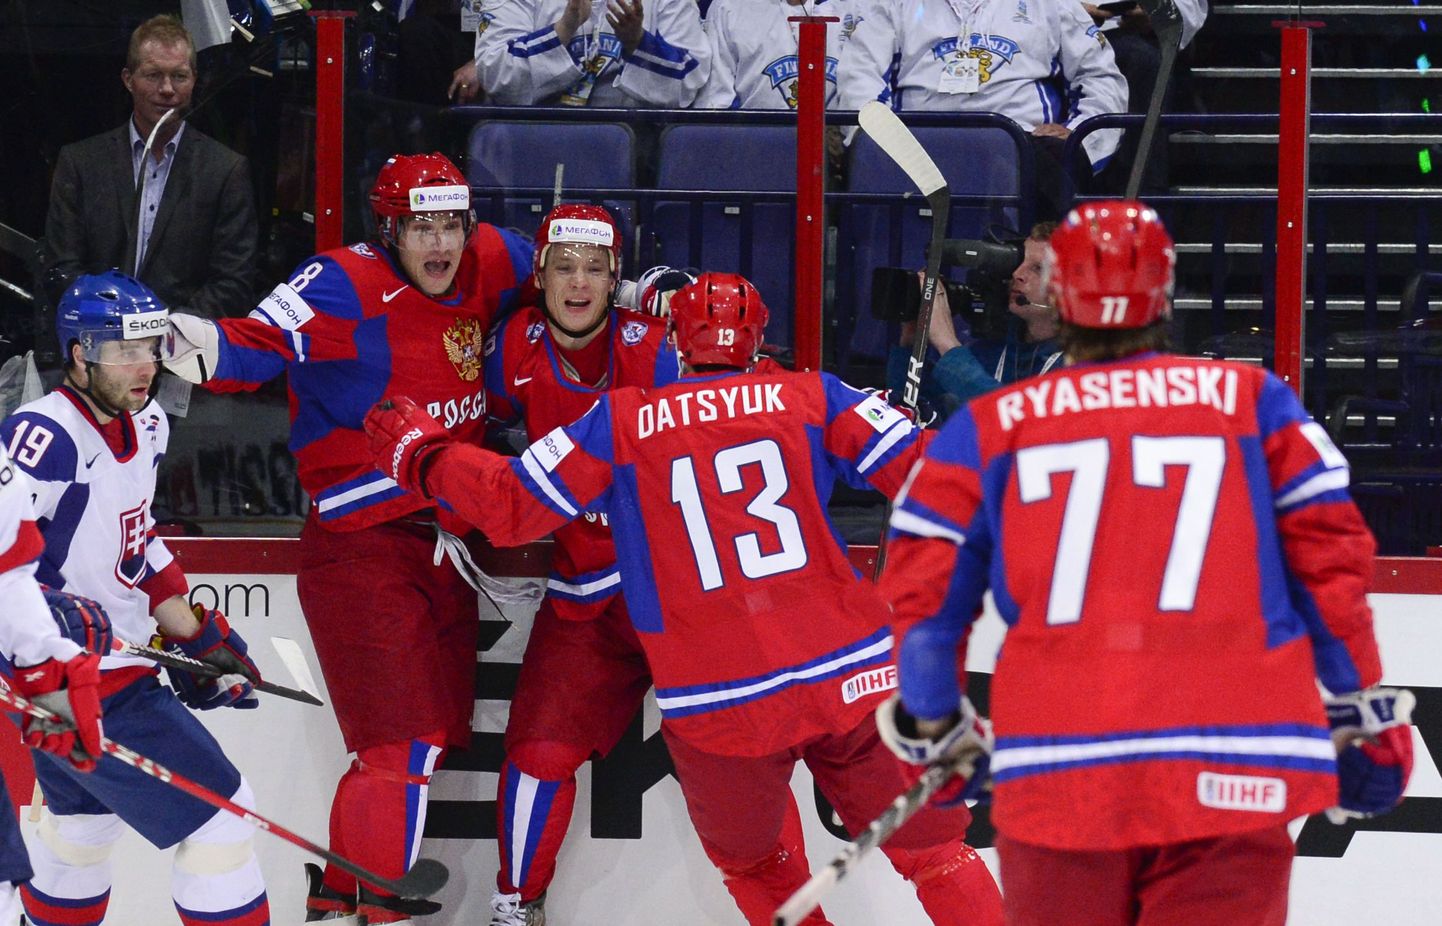 Venemaa mängijad rõõmustamas.